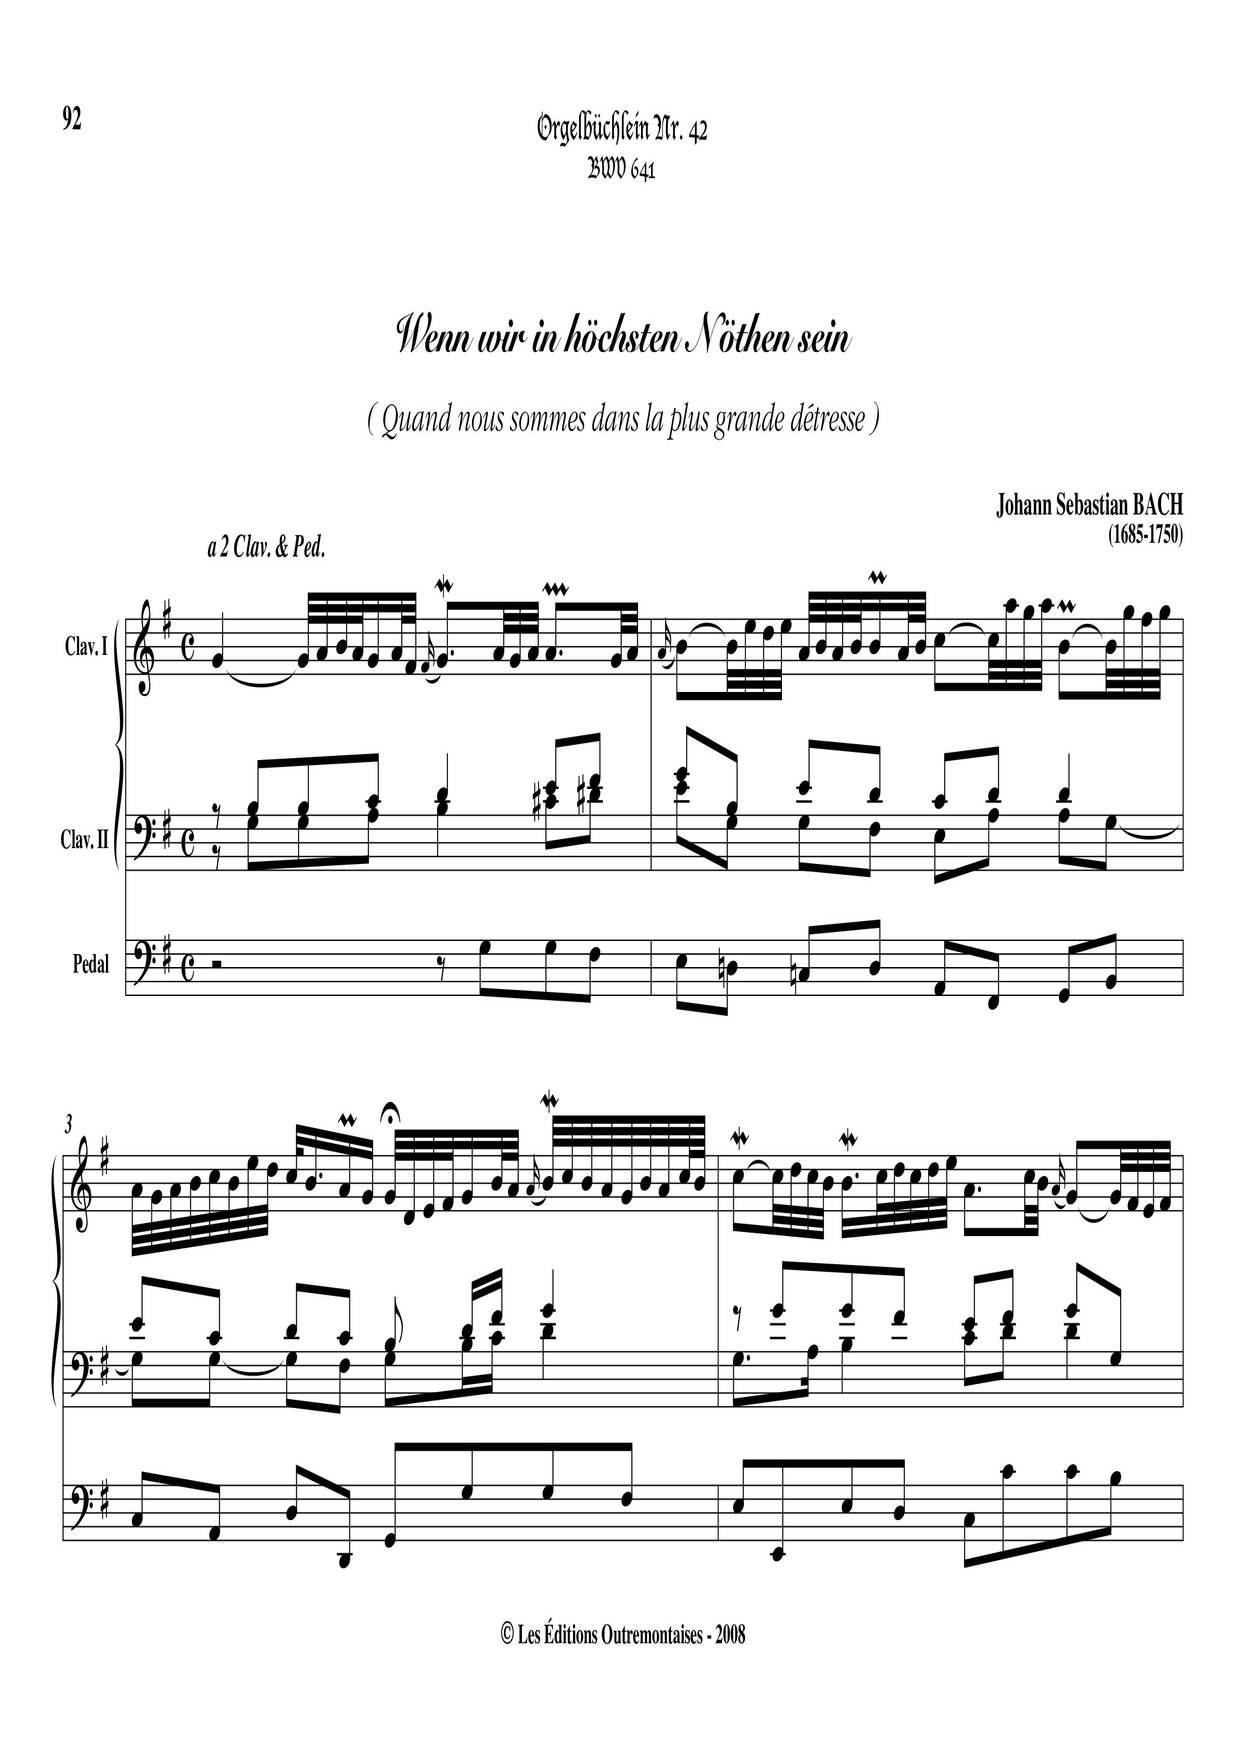 Chorale Prelude 'Wenn Wir In Hochsten Noten Sein', BWV 641琴谱